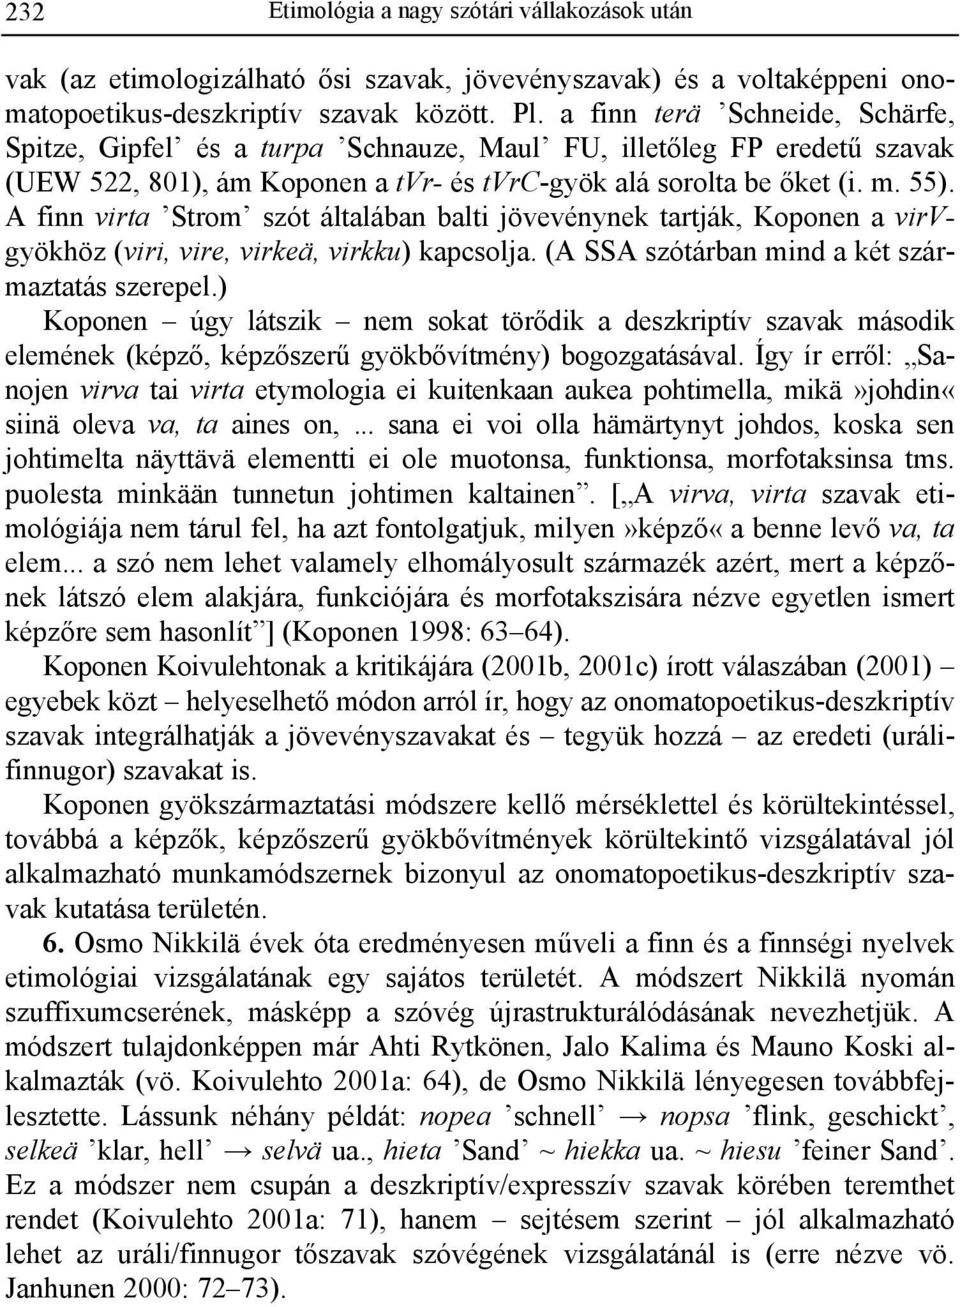 A finn virta Strom szót általában balti jövevénynek tartják, Koponen a virvgyökhöz (viri, vire, virkeä, virkku) kapcsolja. (A SSA szótárban mind a két származtatás szerepel.